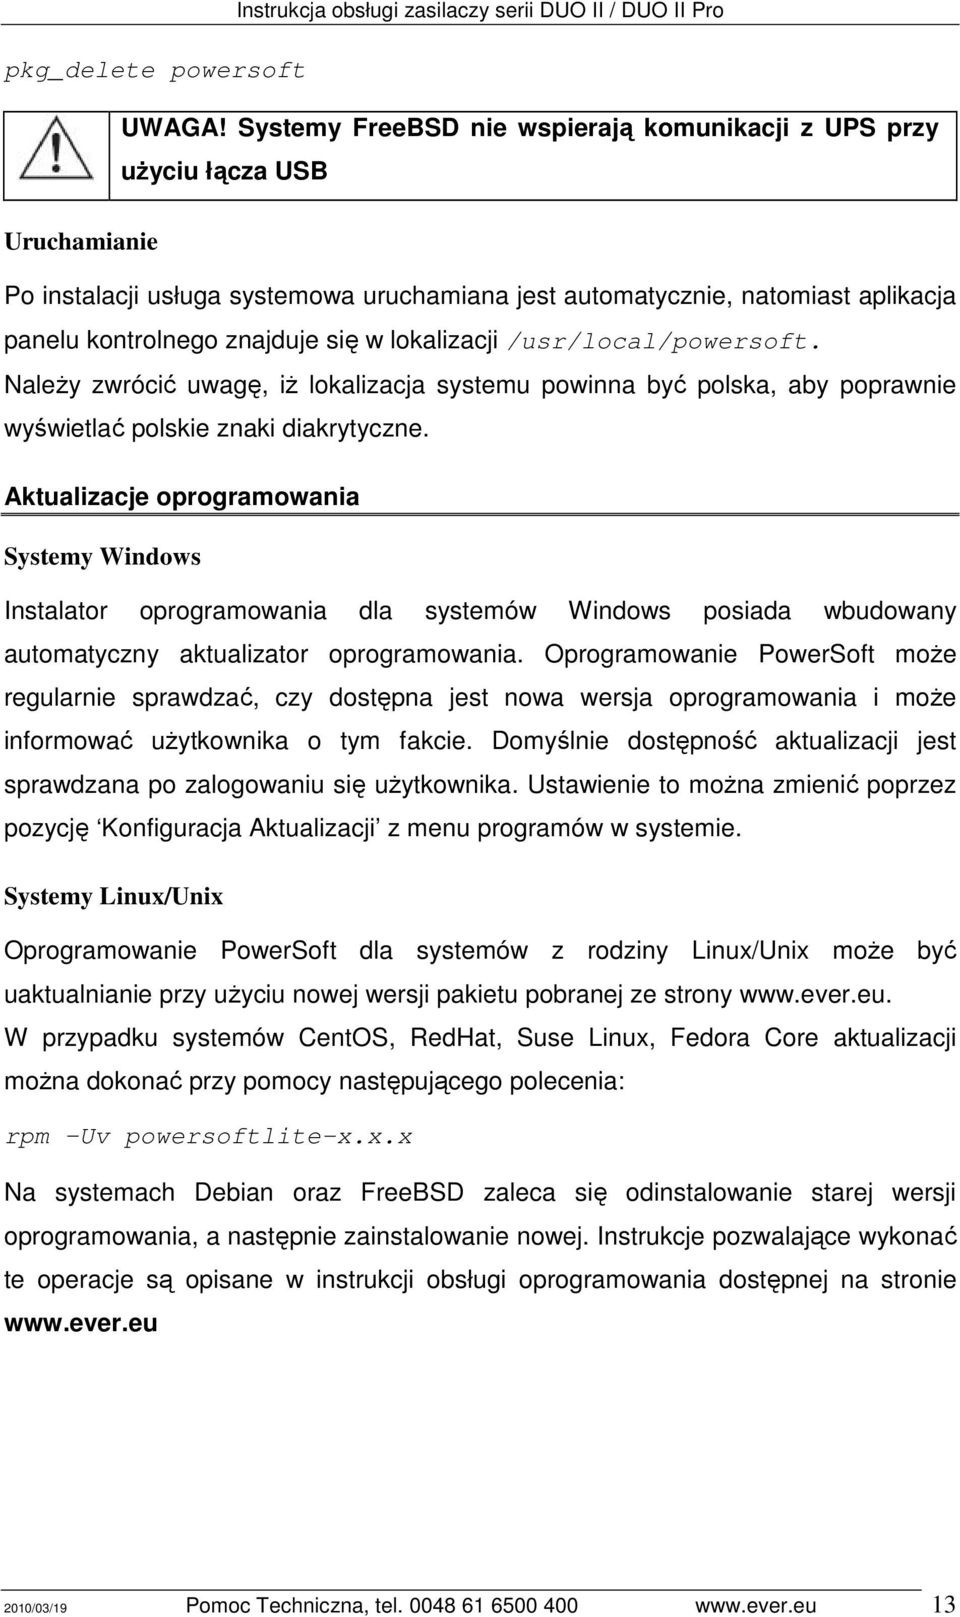 lokalizacji /usr/local/powersoft. NaleŜy zwrócić uwagę, iŝ lokalizacja systemu powinna być polska, aby poprawnie wyświetlać polskie znaki diakrytyczne.